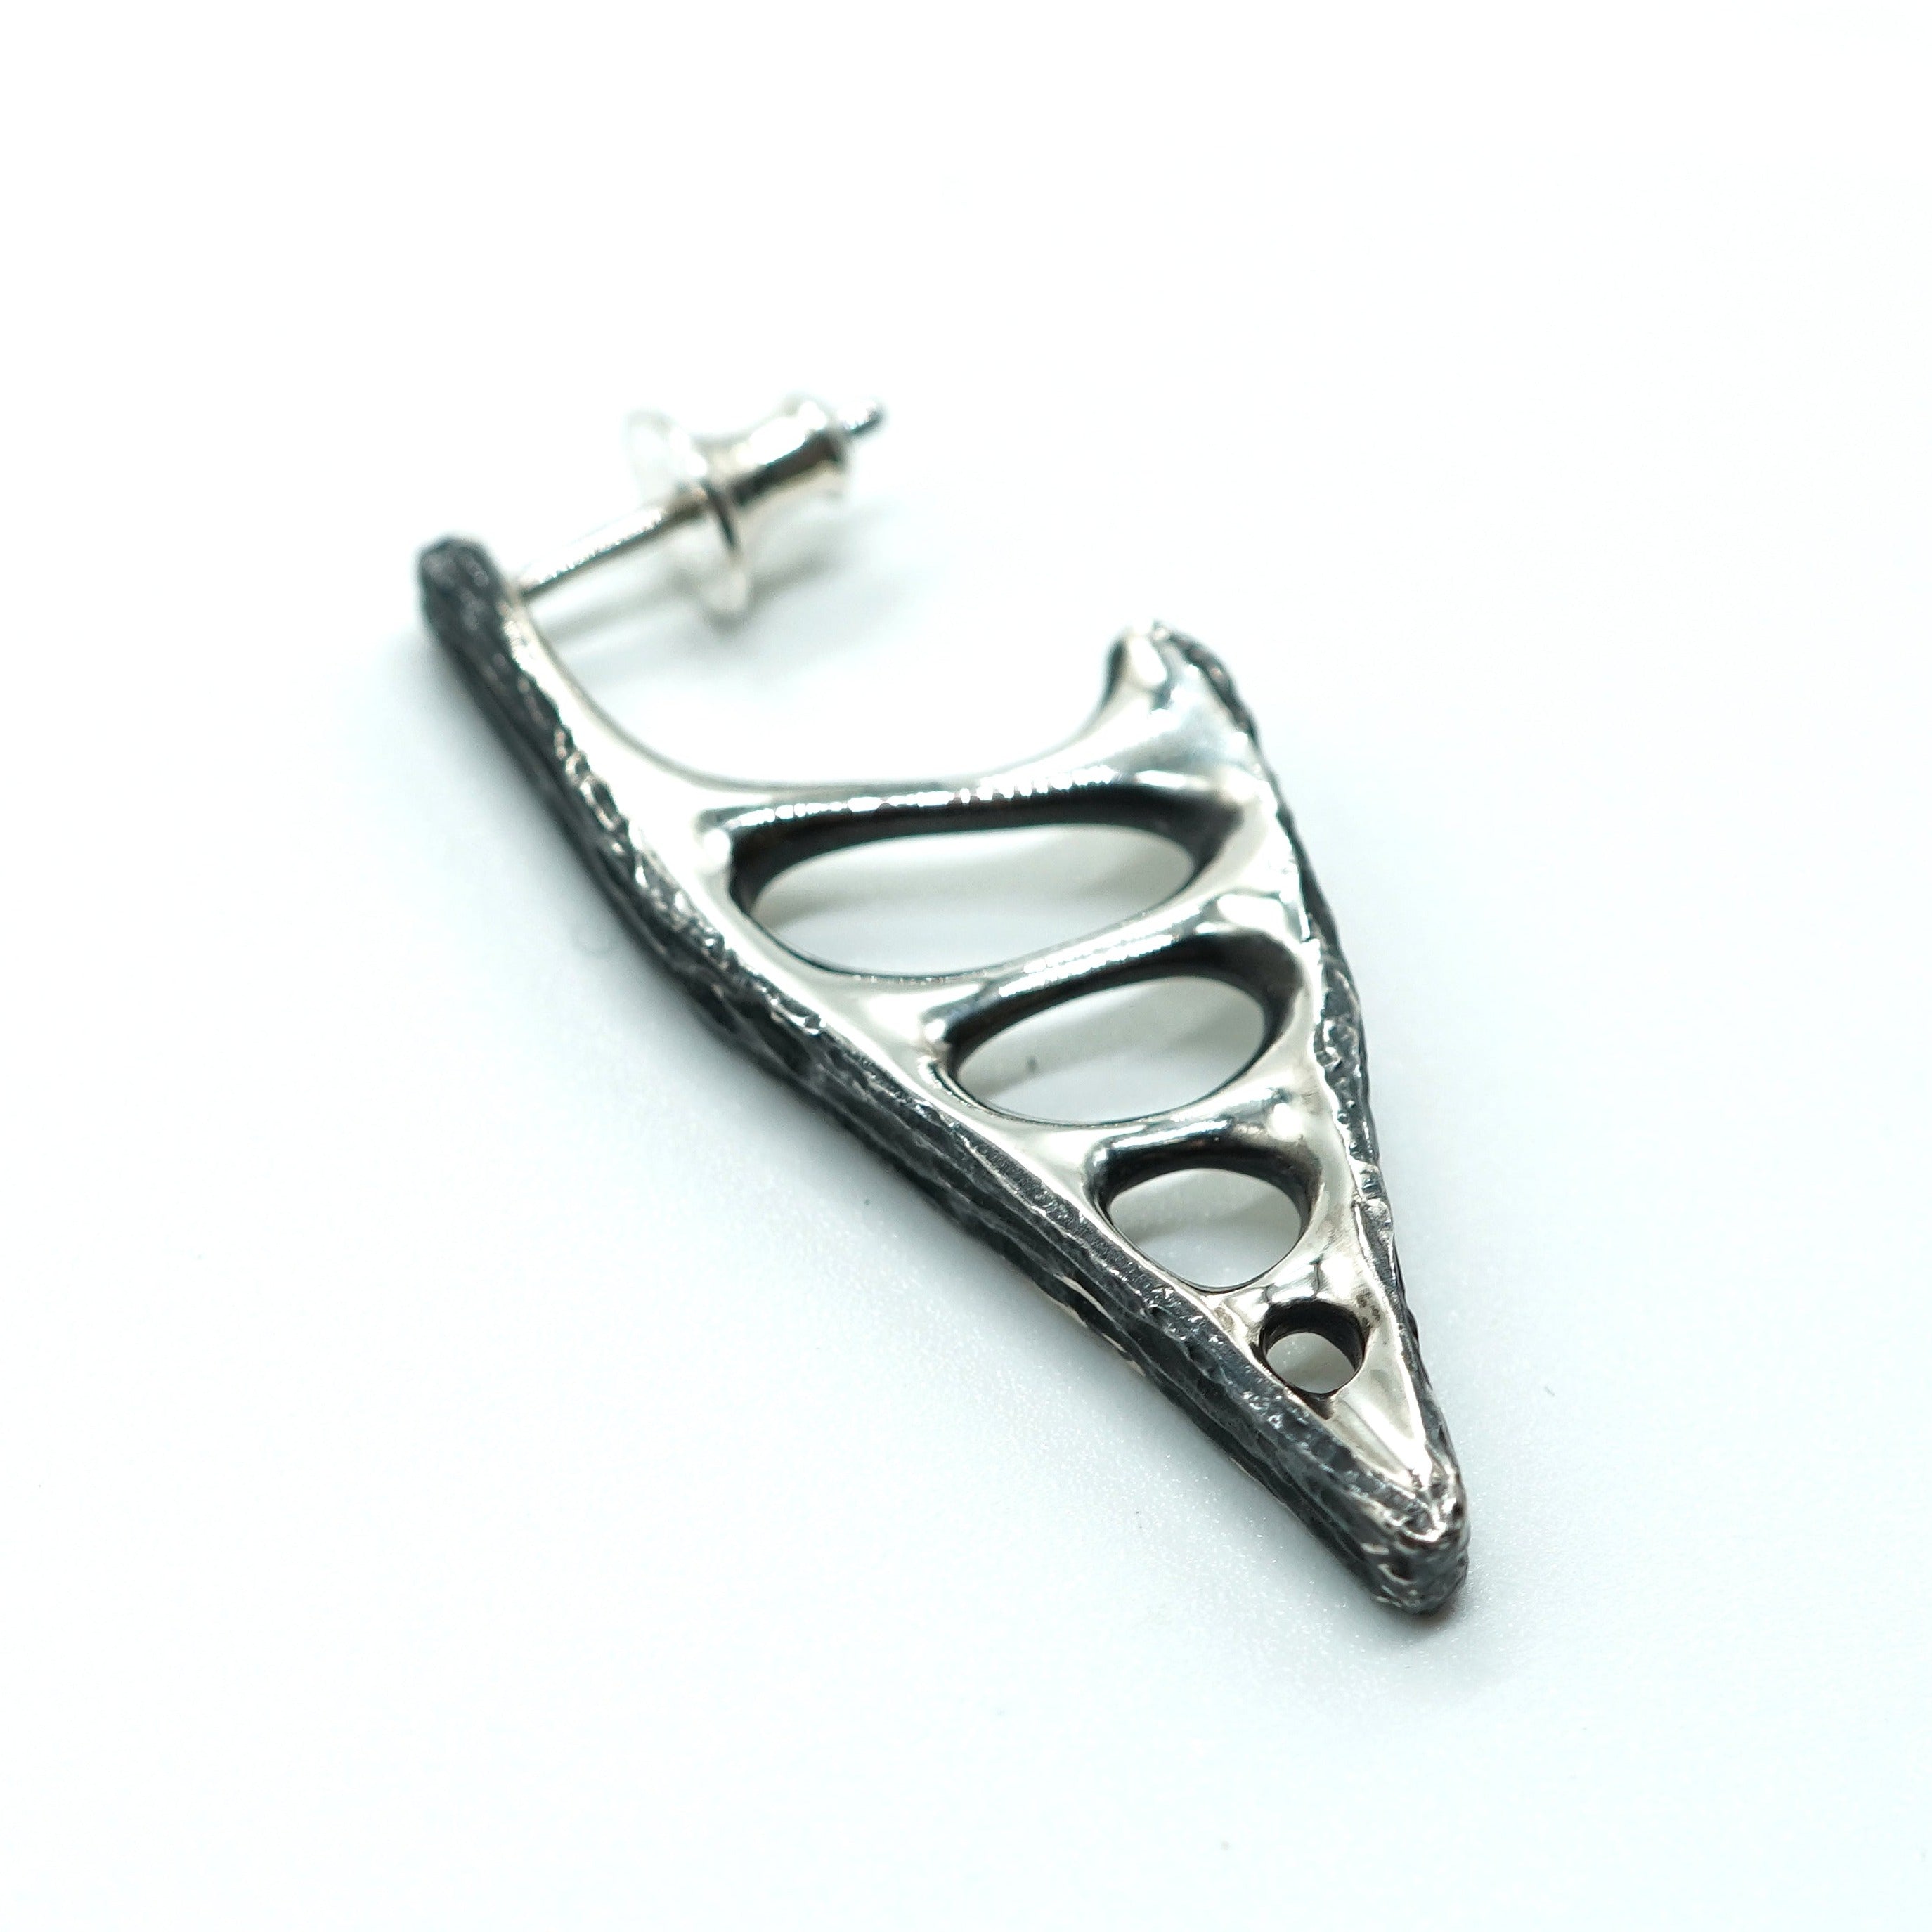 MY-25 silver earring – Node by KUDO SHUJI